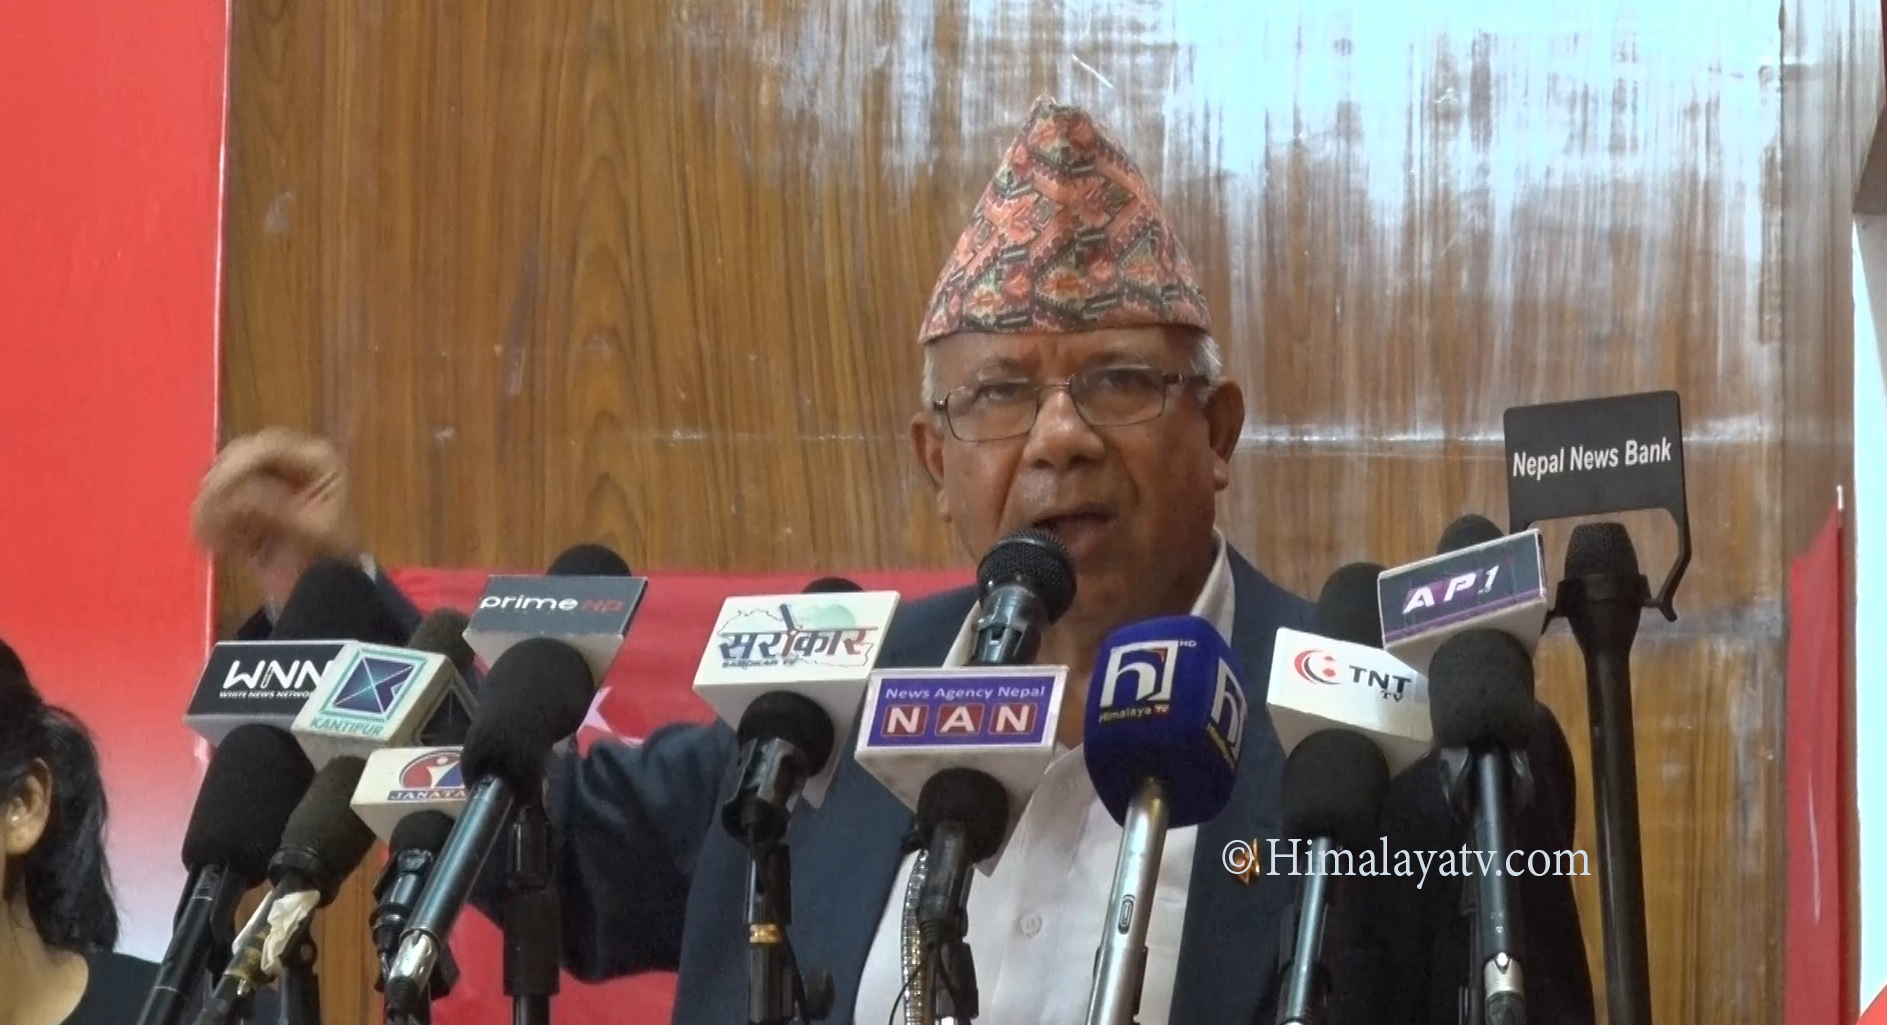 एमालेको नेपाल–खनाल समूह अर्को पार्टी गठनको तयारीमा (भिडियो रिपोर्टसहित)